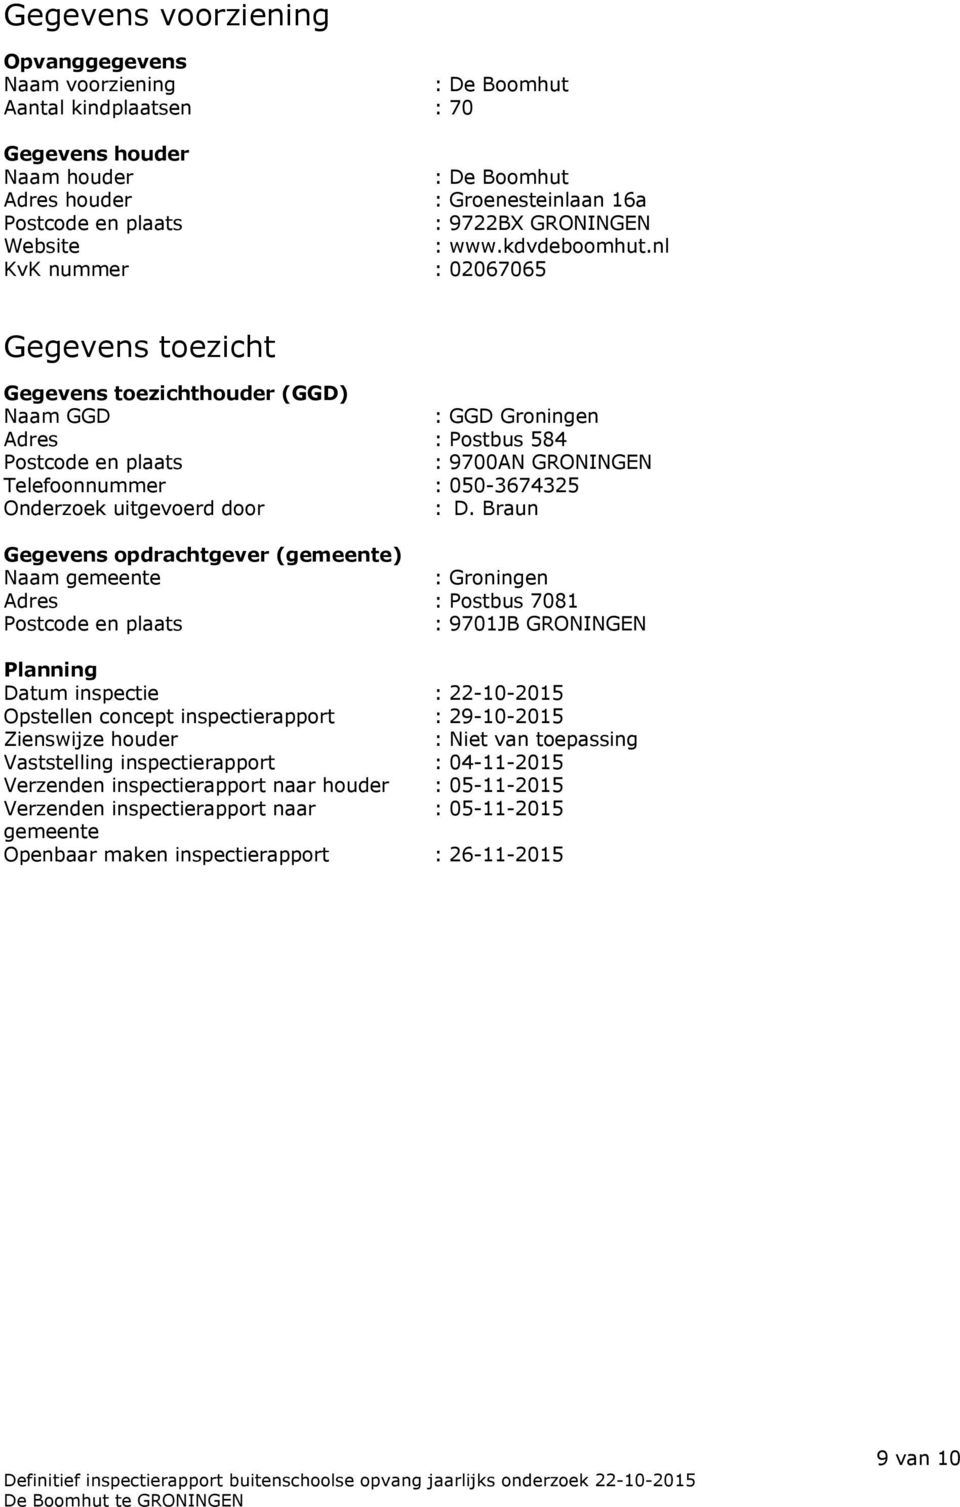 nl KvK nummer : 02067065 Gegevens toezicht Gegevens toezichthouder (GGD) Naam GGD : GGD Groningen Adres : Postbus 584 Postcode en plaats : 9700AN GRONINGEN Telefoonnummer : 050-3674325 Onderzoek